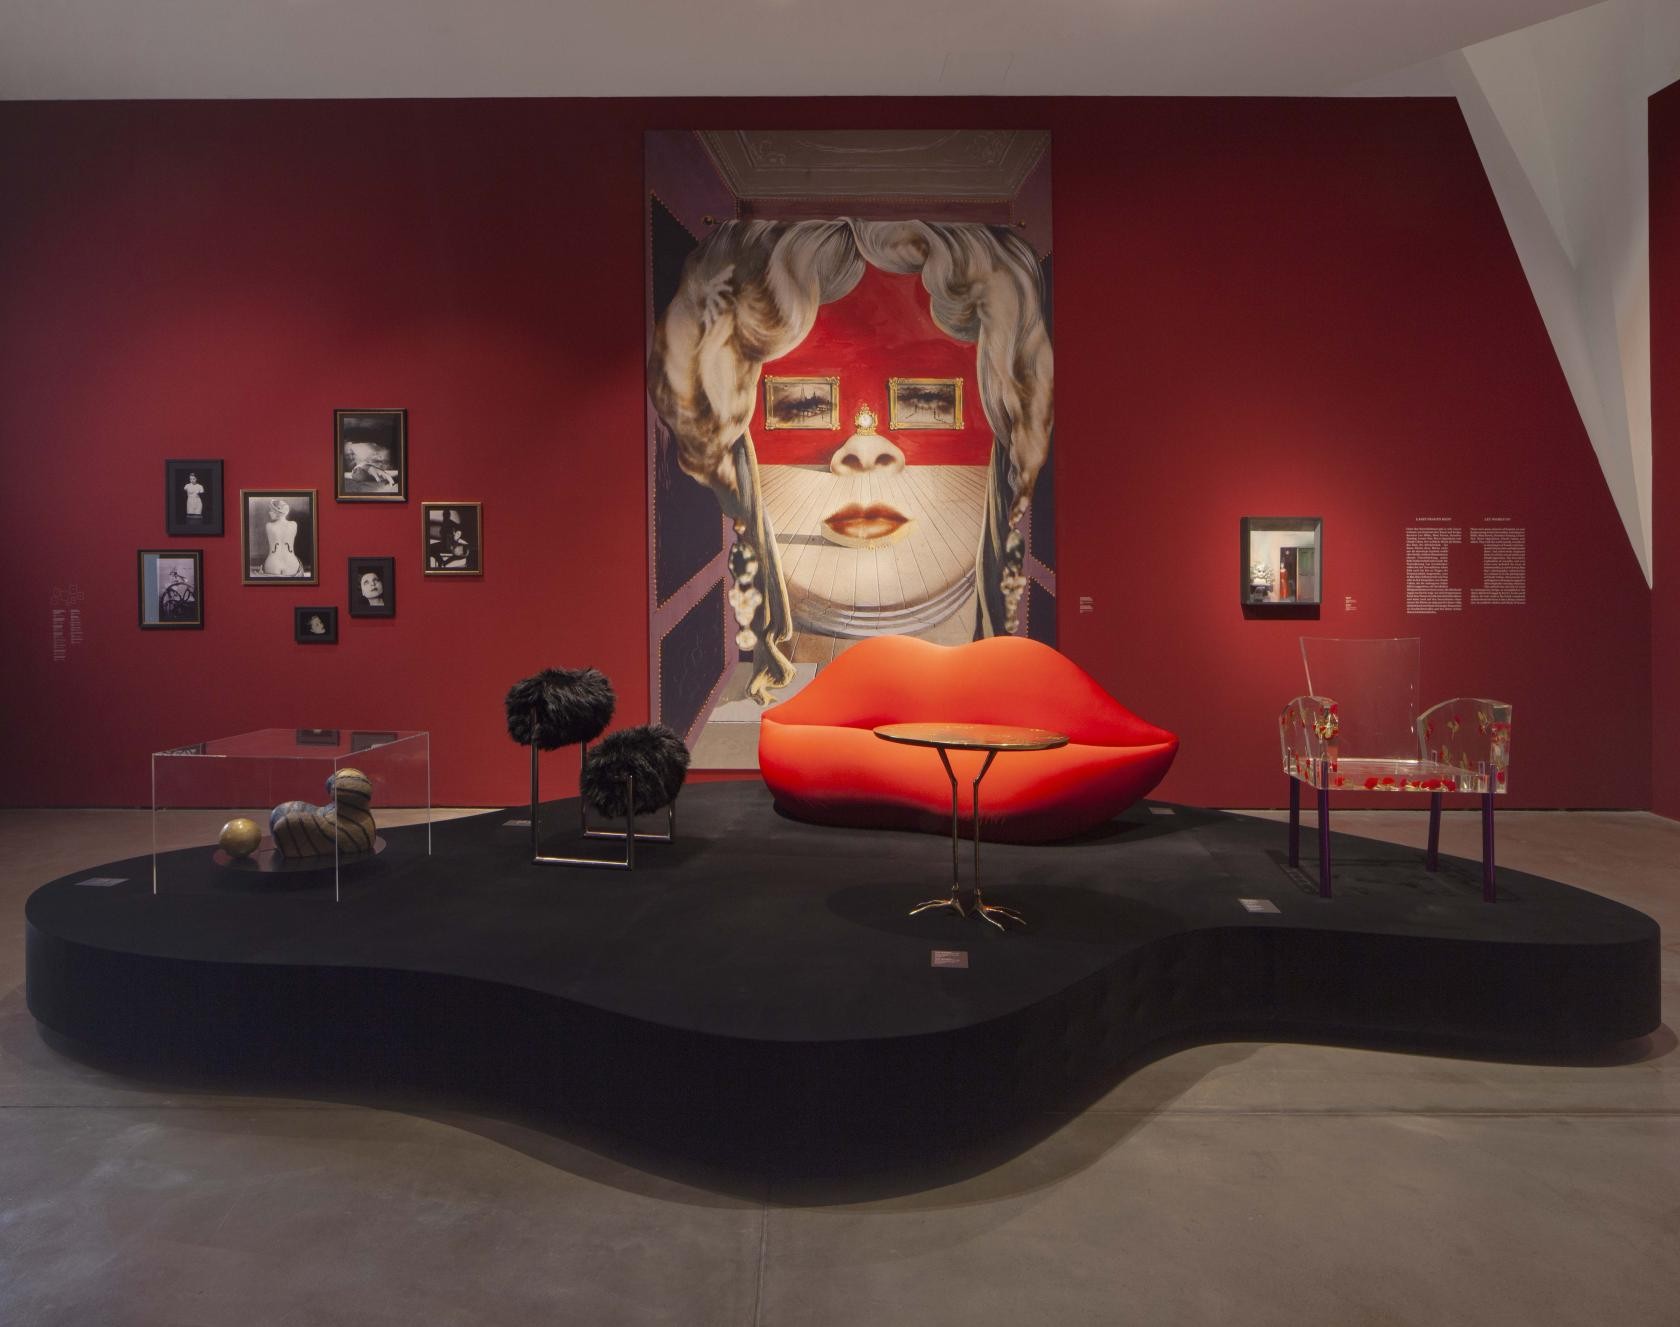 Surrealismo no Design é tema de exposição no Vitra Museum  (Foto: Divulgação)